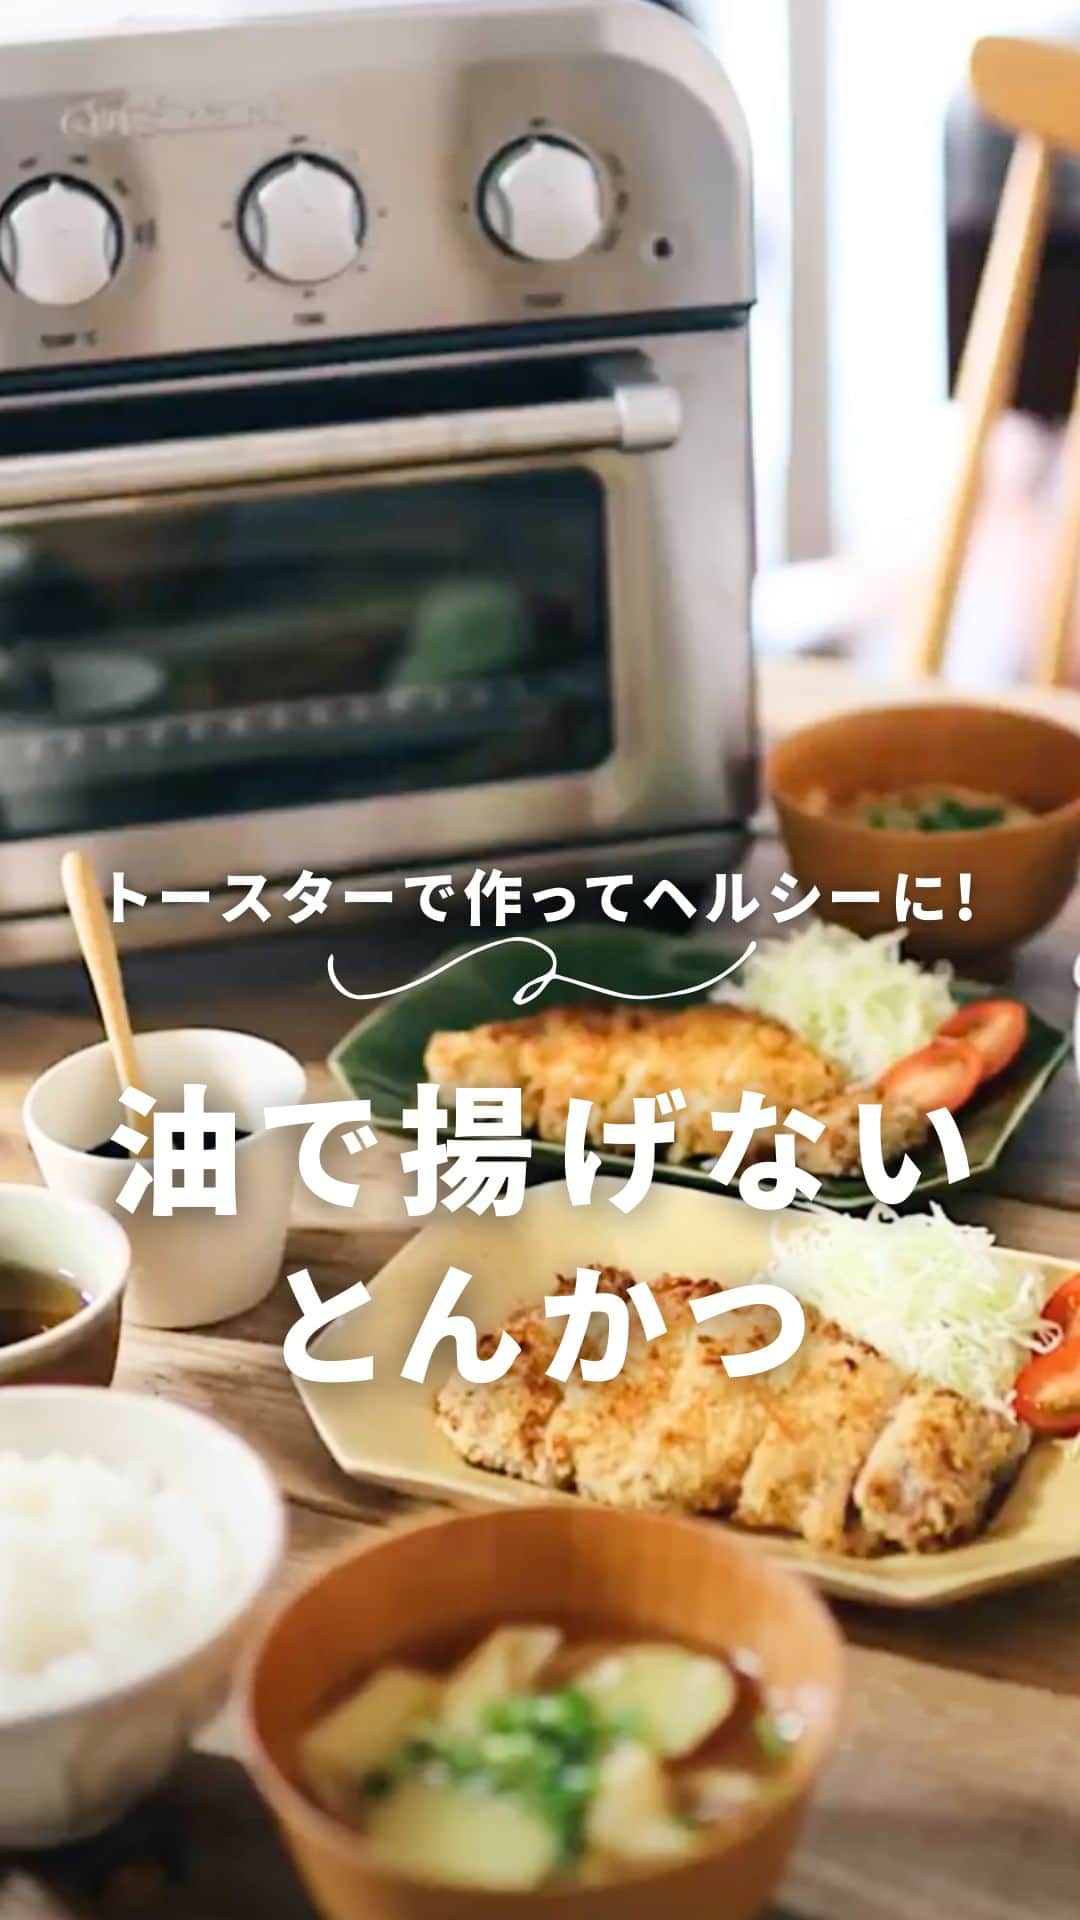 Cuisinart(クイジナート)ジャパン公式アカウントのインスタグラム